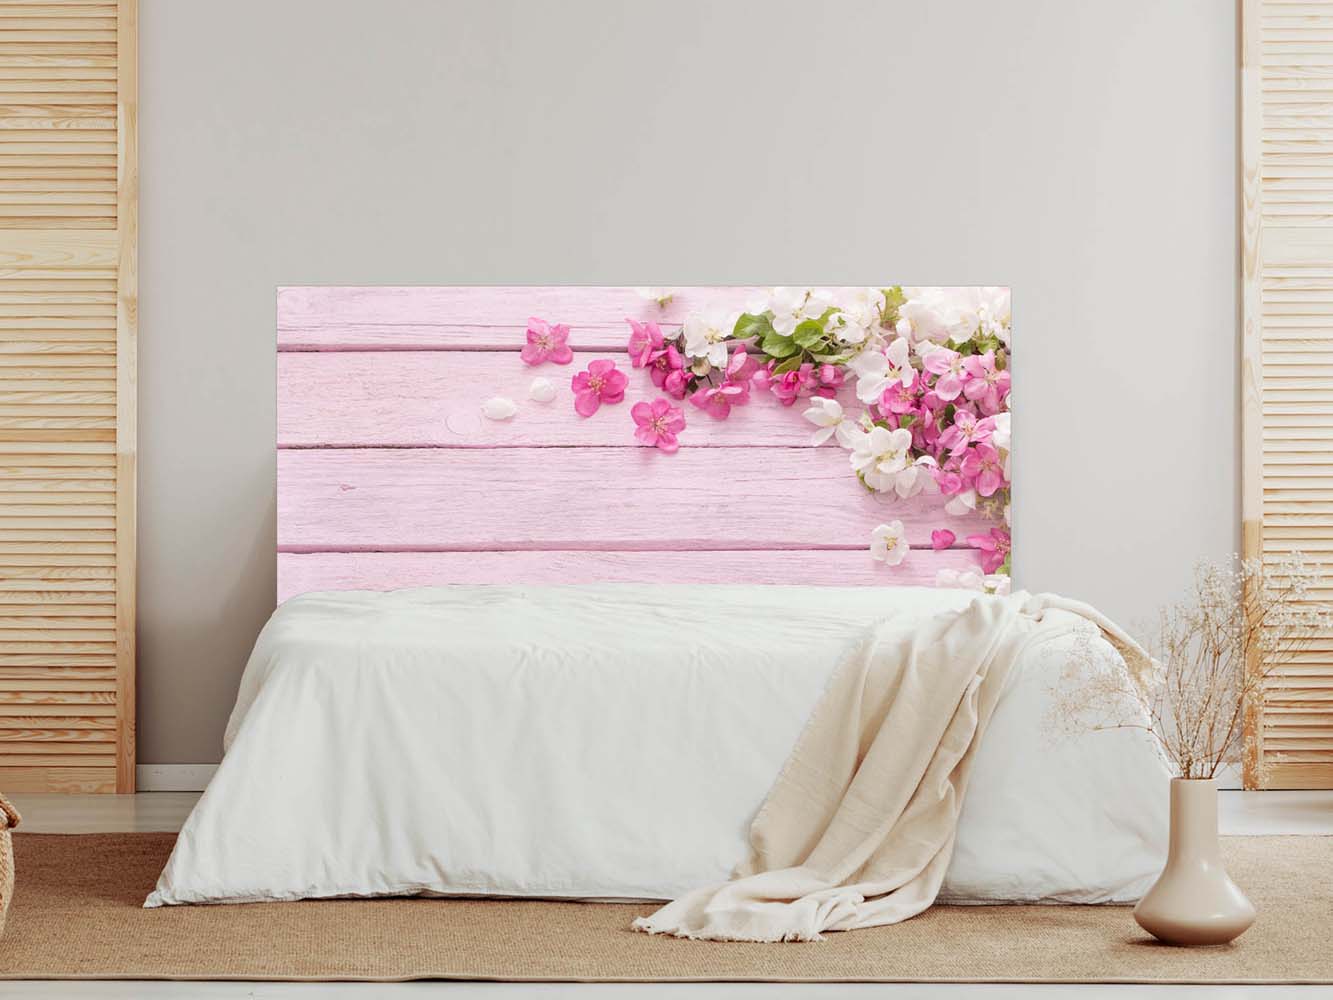 Vinilos decorativos cabeceros camas de madera rústica